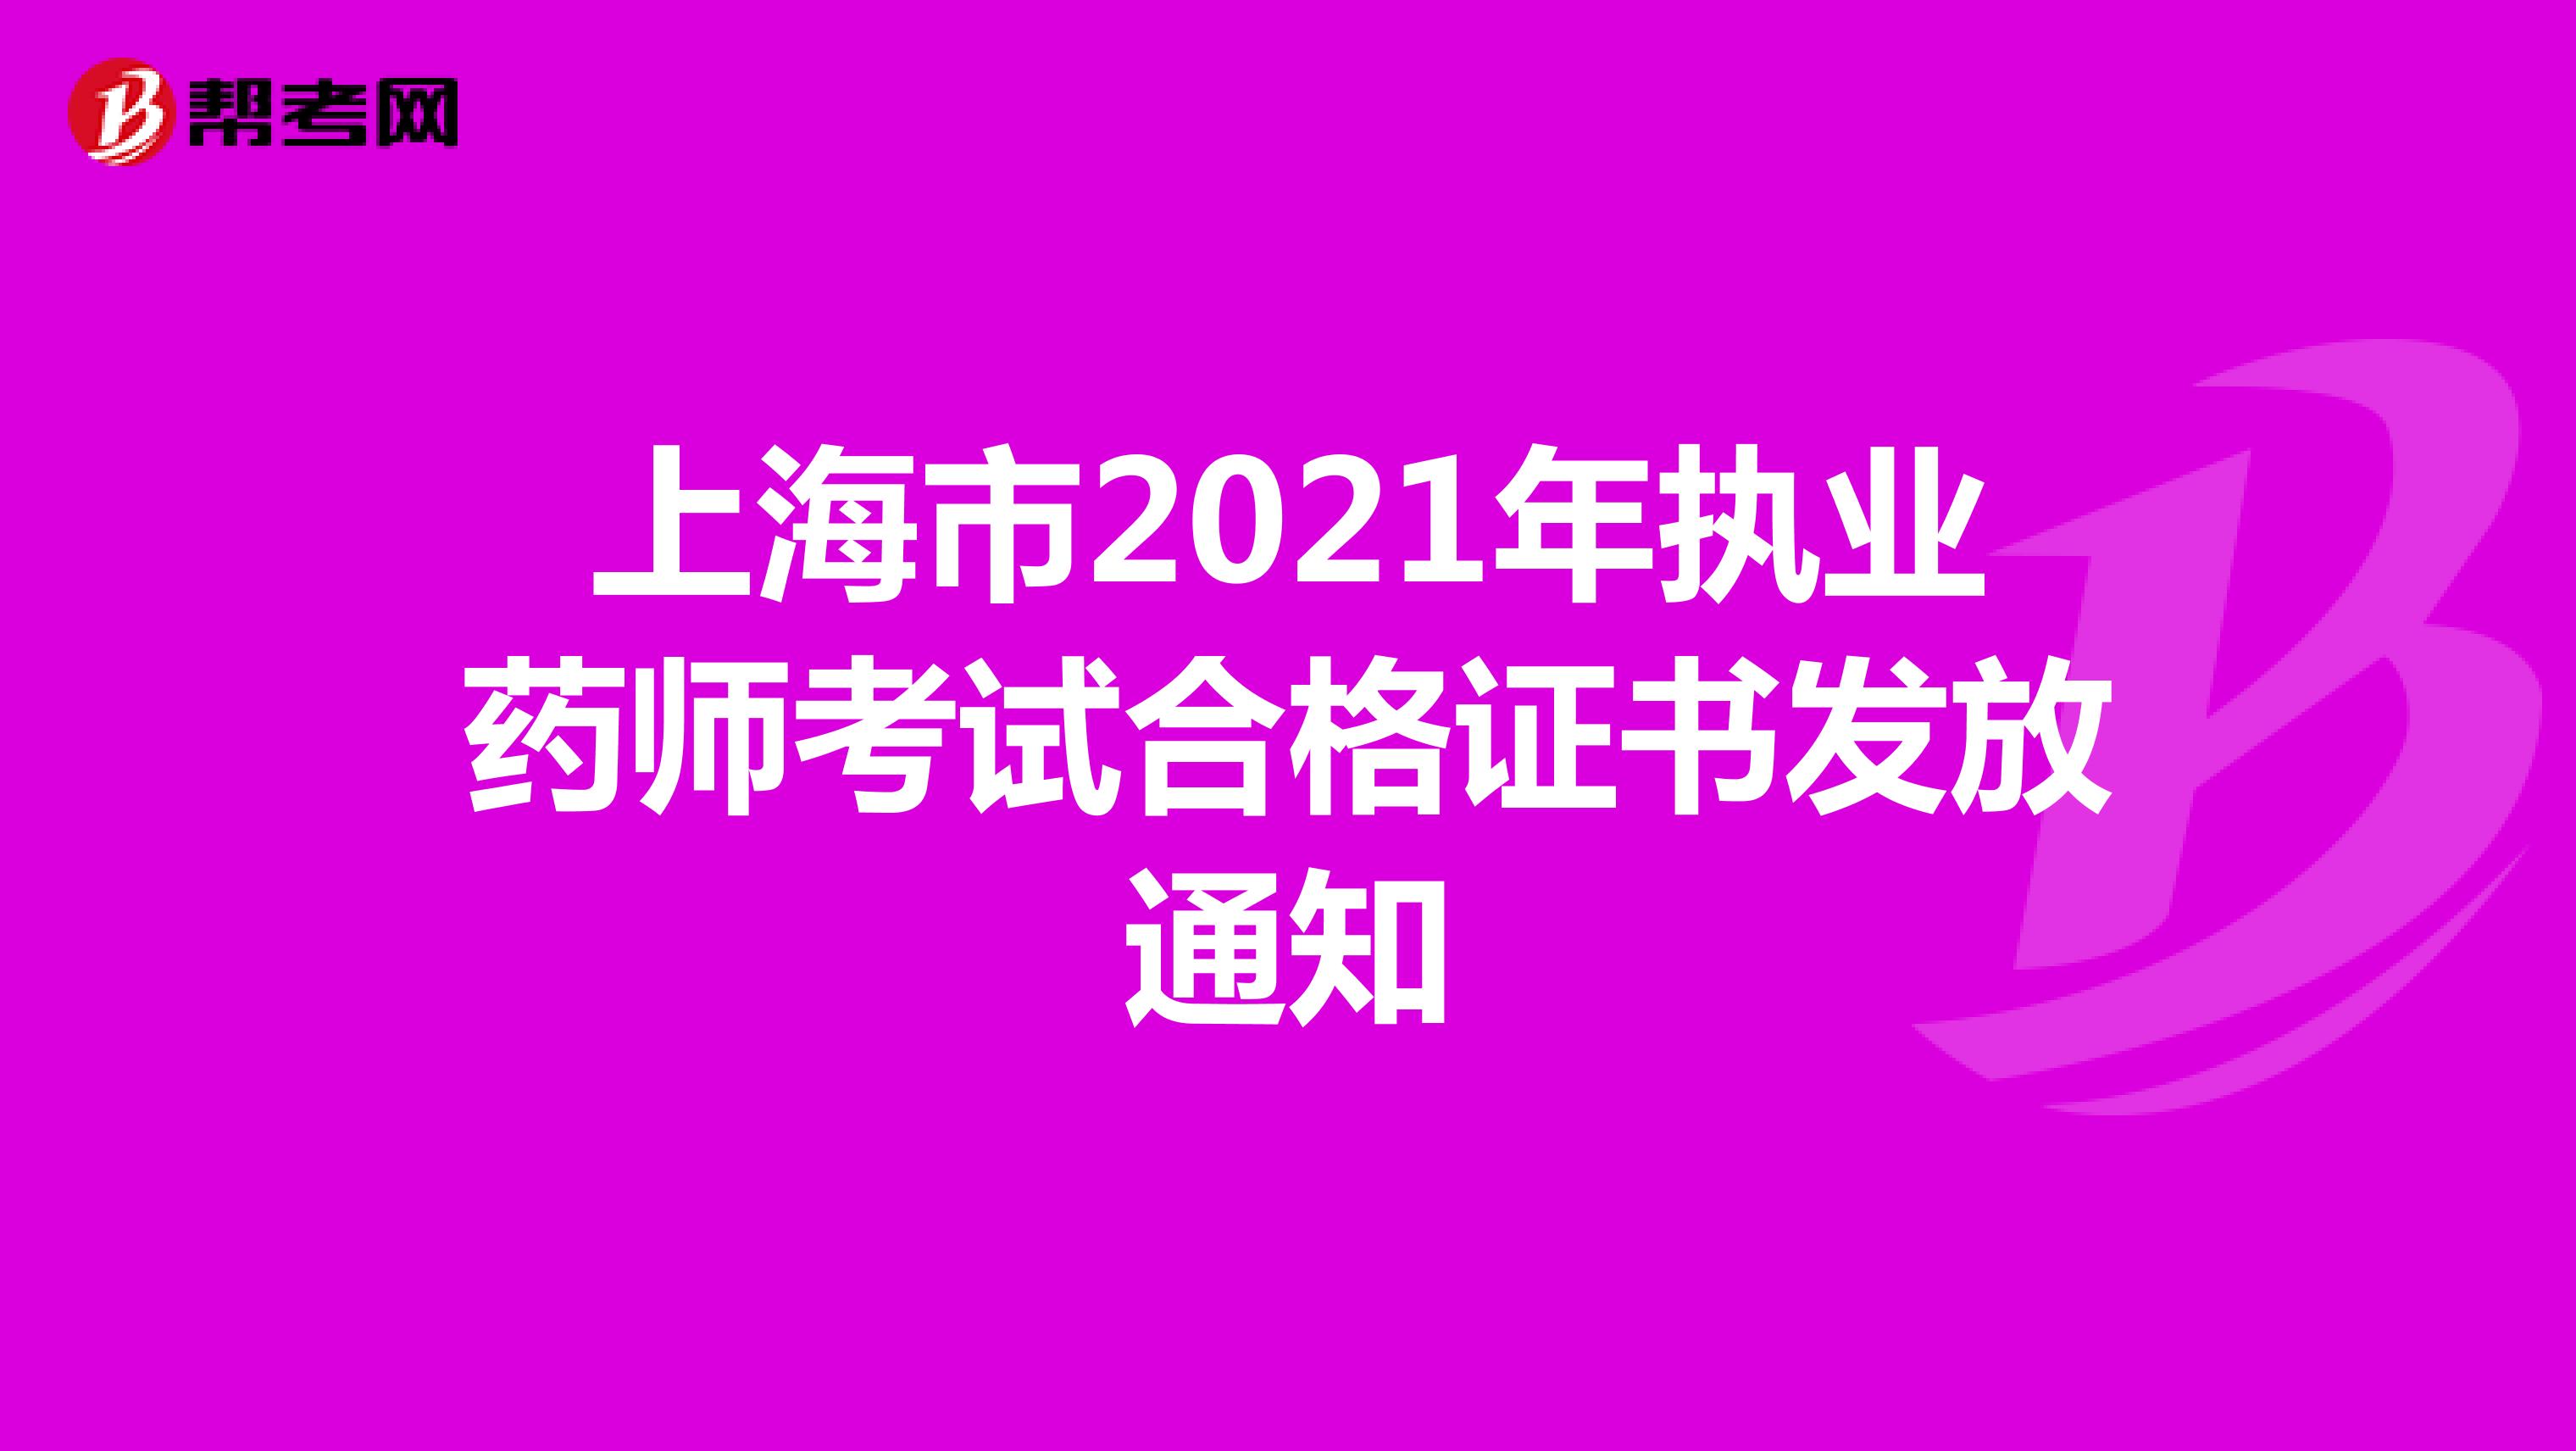 上海市2021年执业药师考试合格证书发放通知